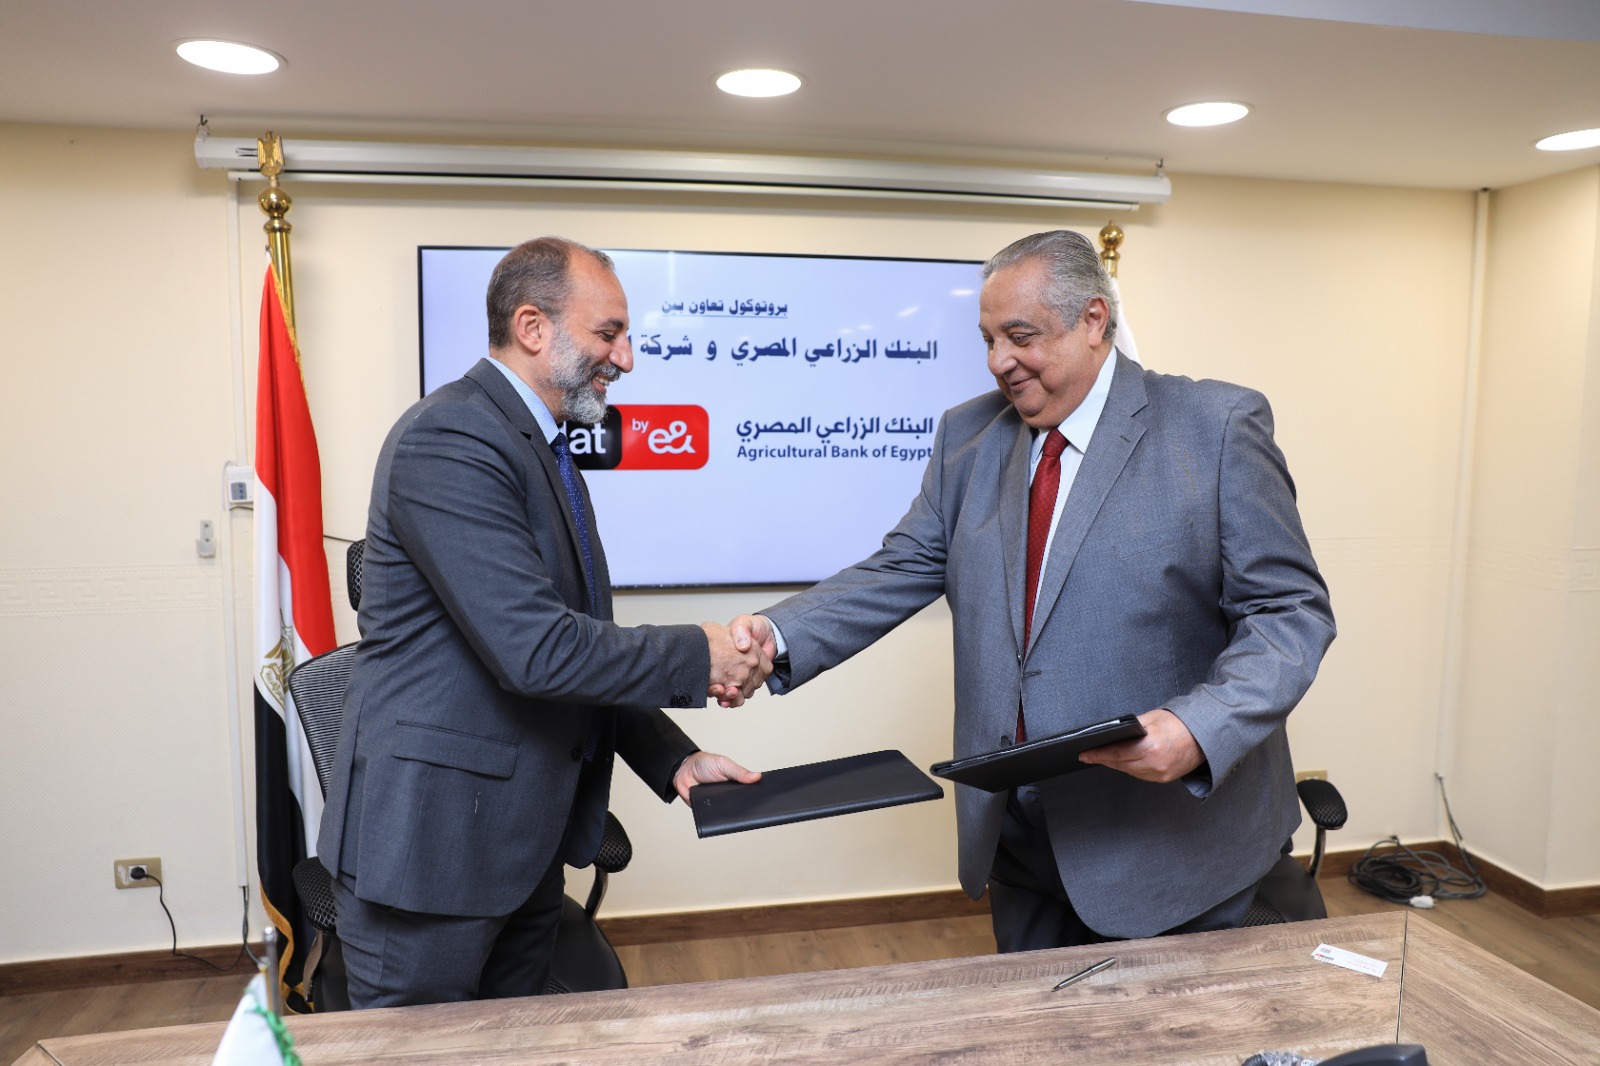 يوقع البنك الزراعي المصري بروتوكول مع شركة اتصالات من e& مصر